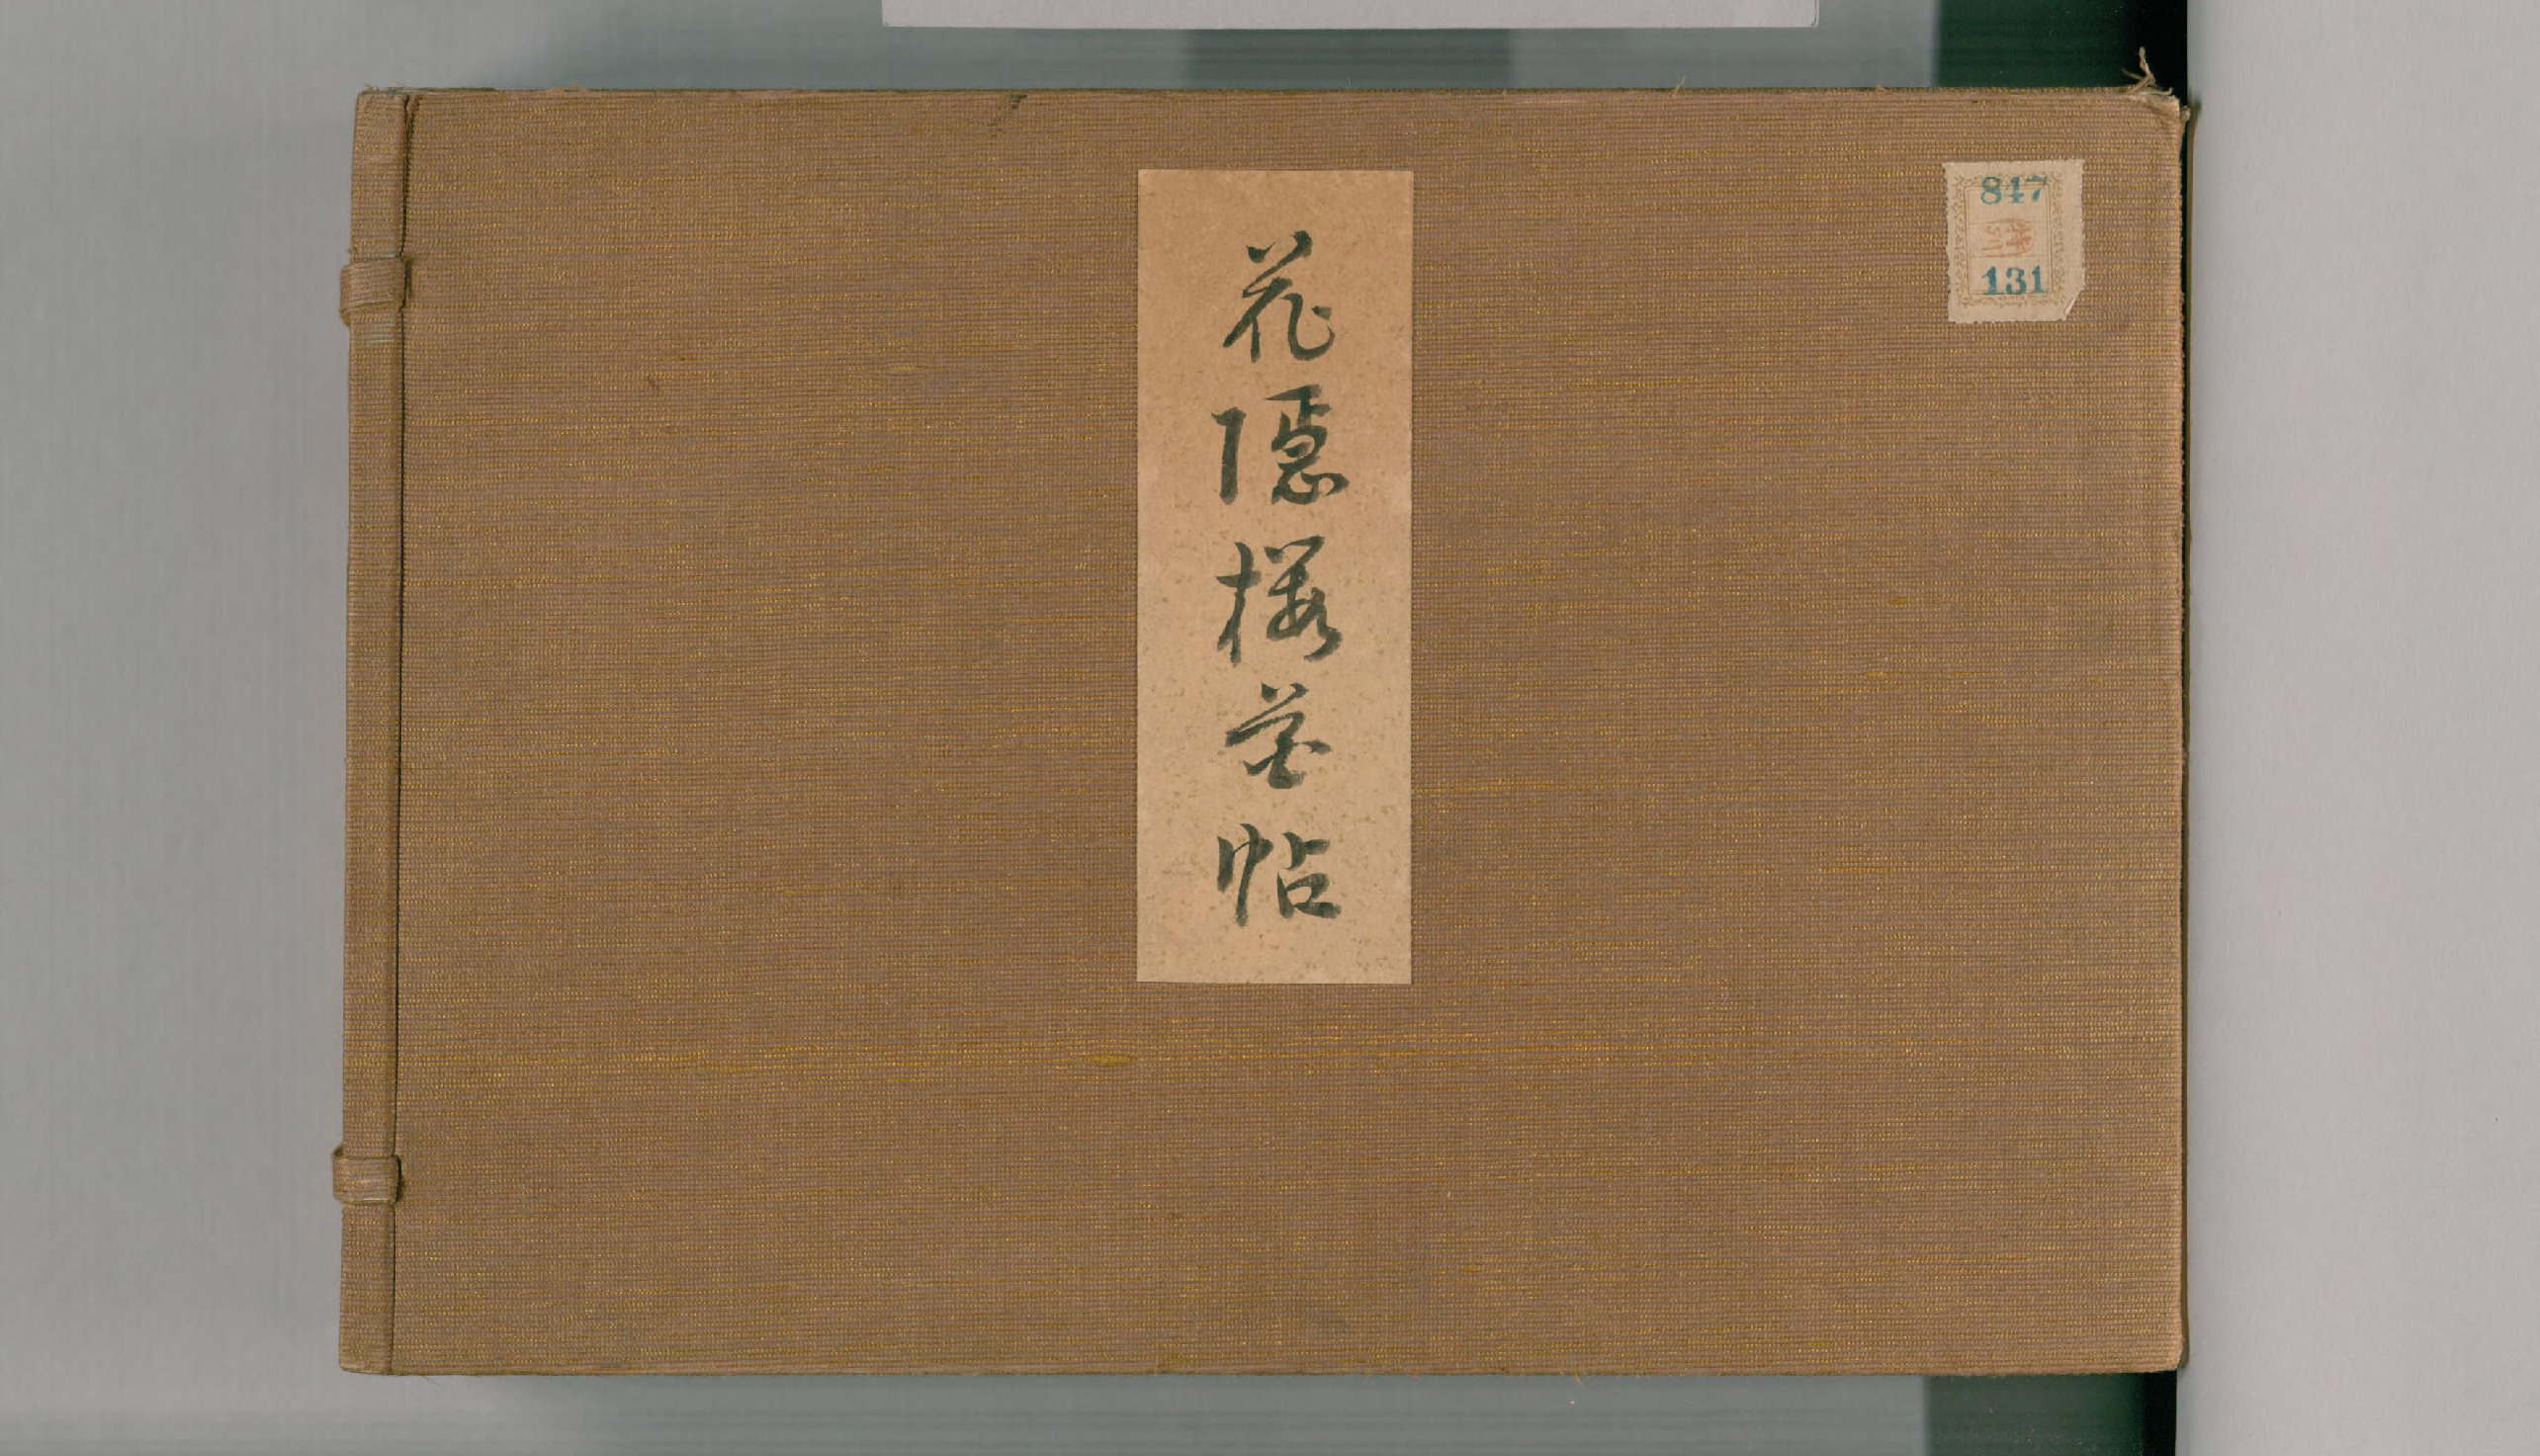 花隐樱花帖.一册.广赖花隐画.江户时代后期.约1824年